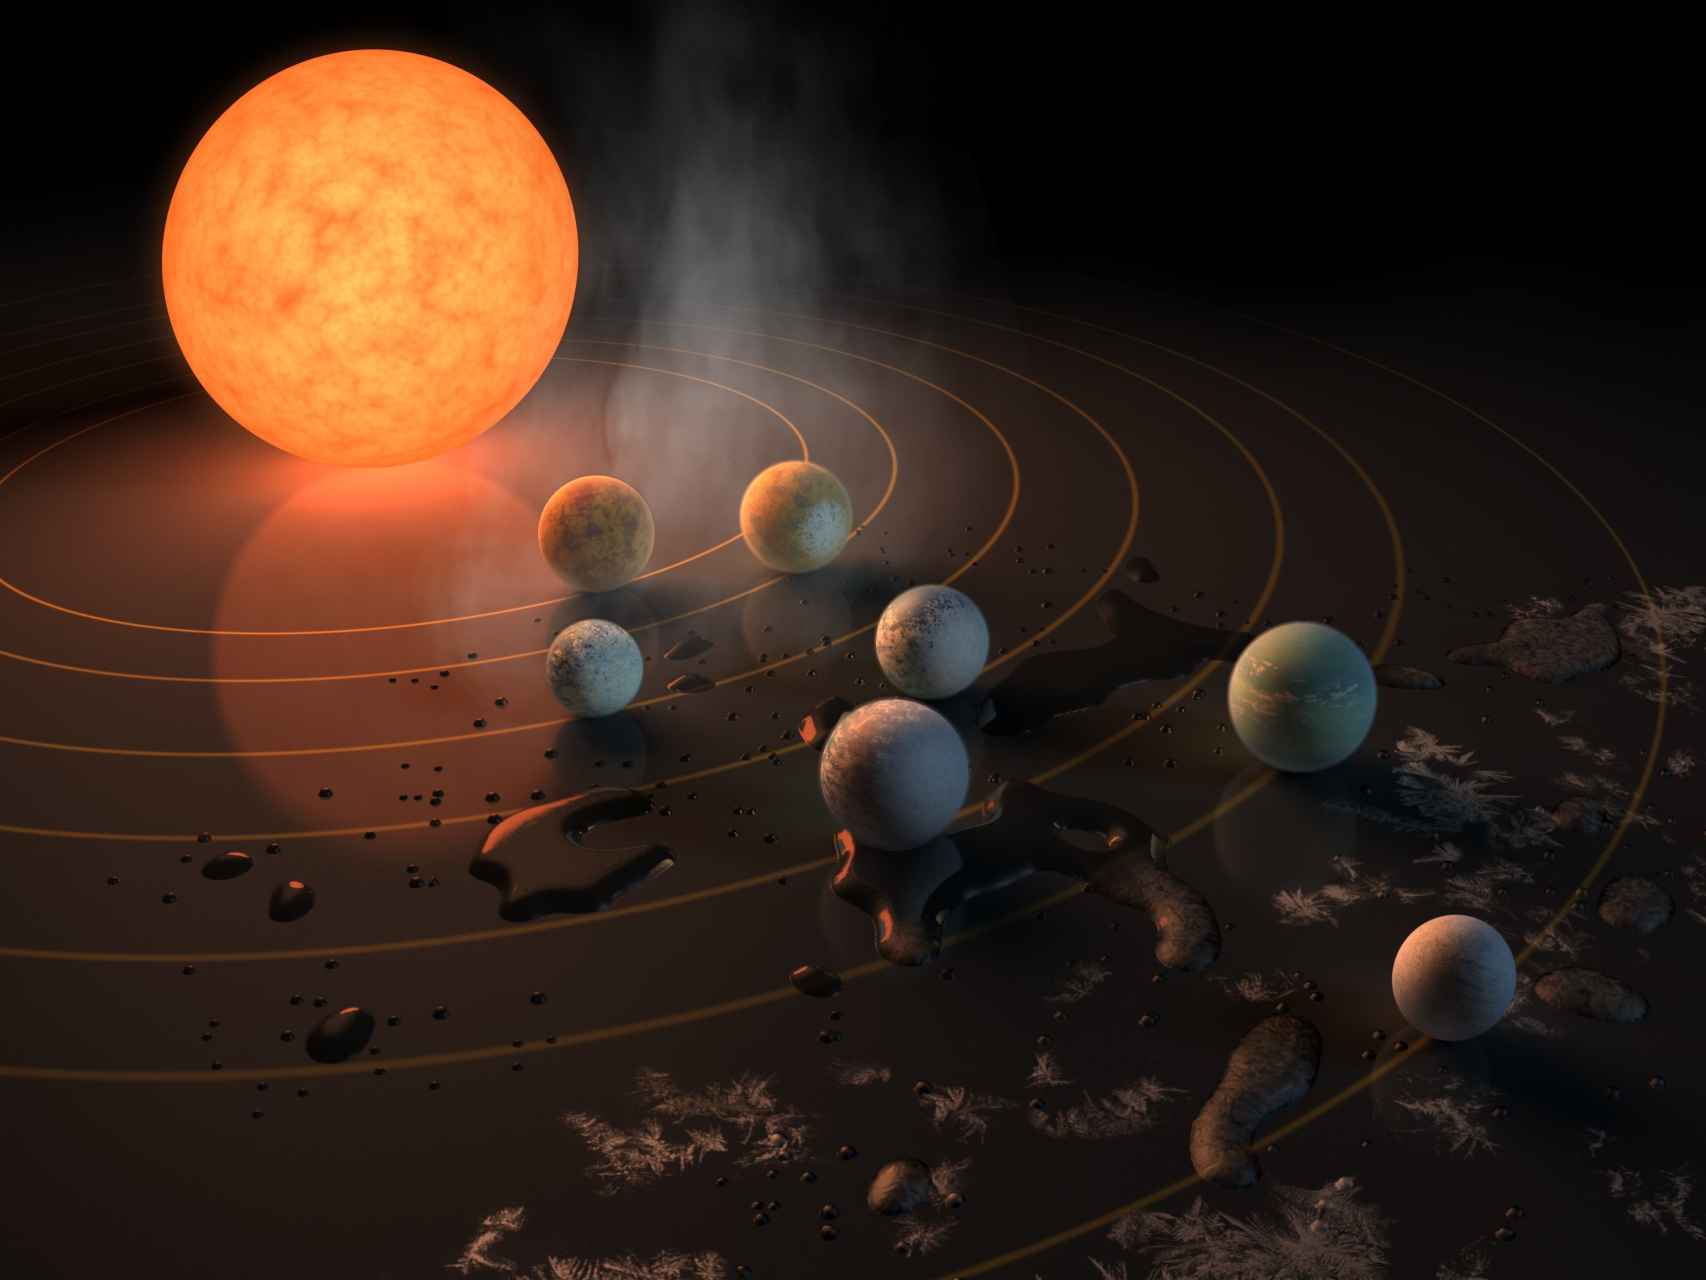 La estrella TRAPPIST-1, enana y superfría, tiene siete planetas del tamaño de la Tierra orbitándola.